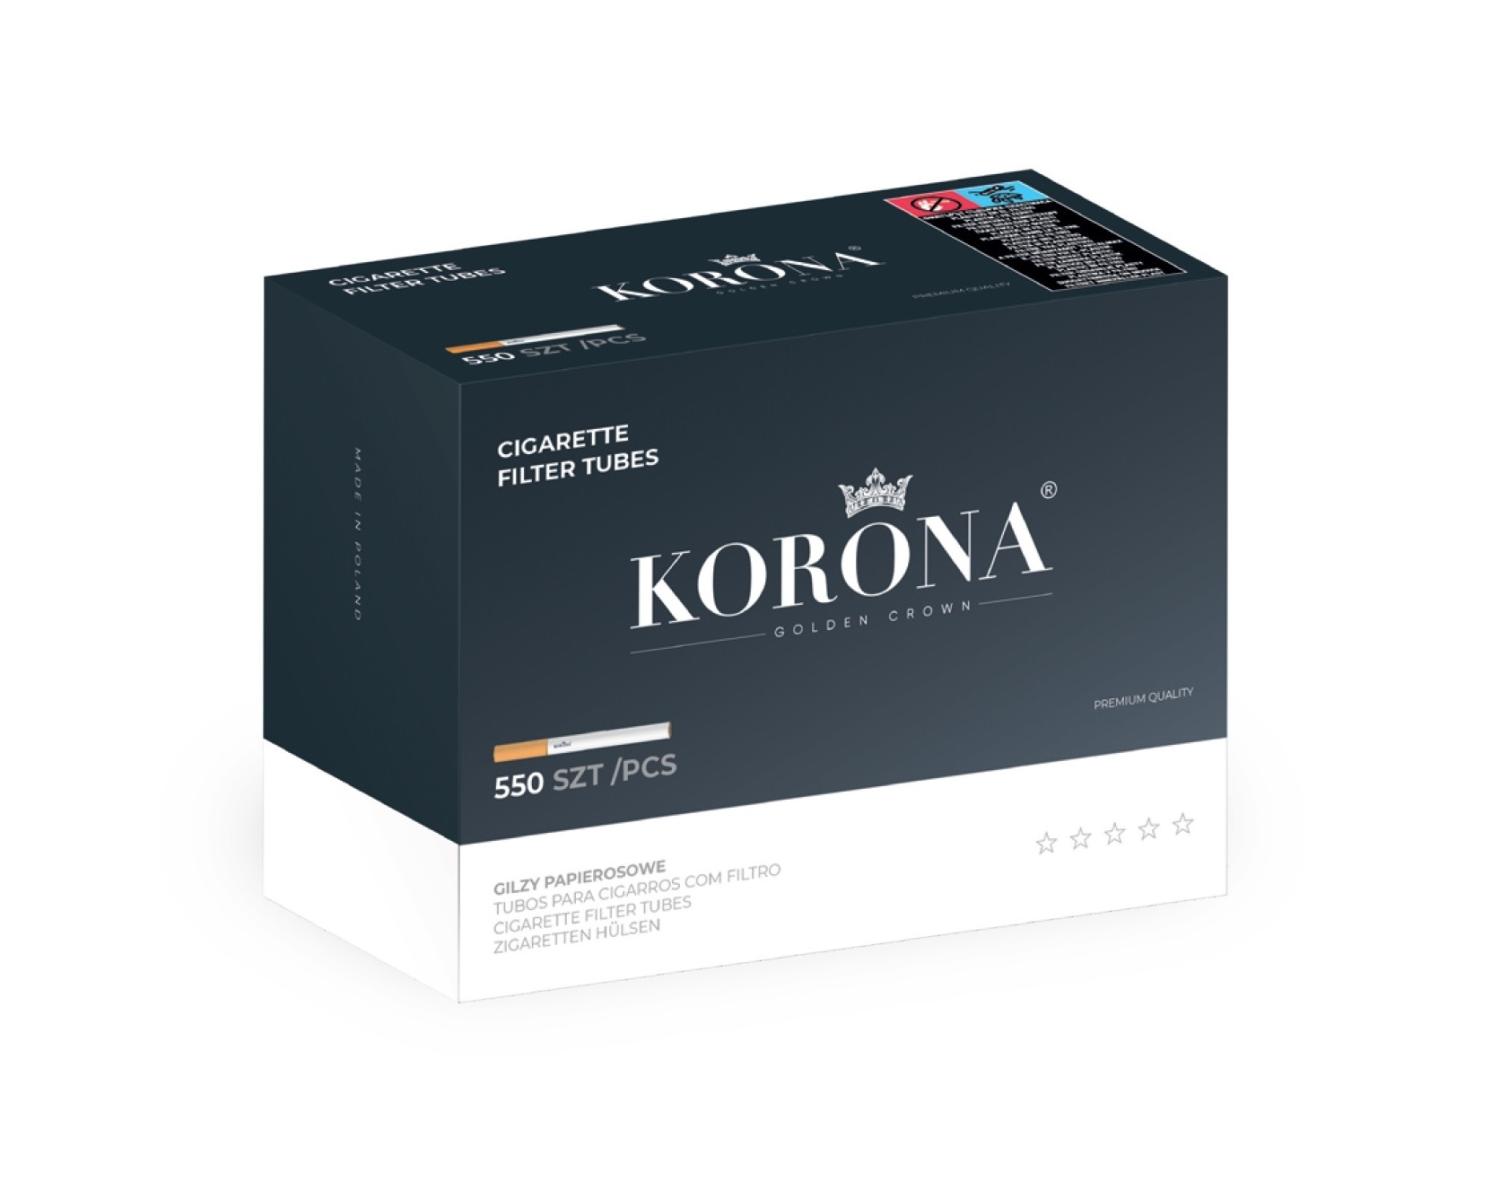 Korona Filter Tubes 550x20-p